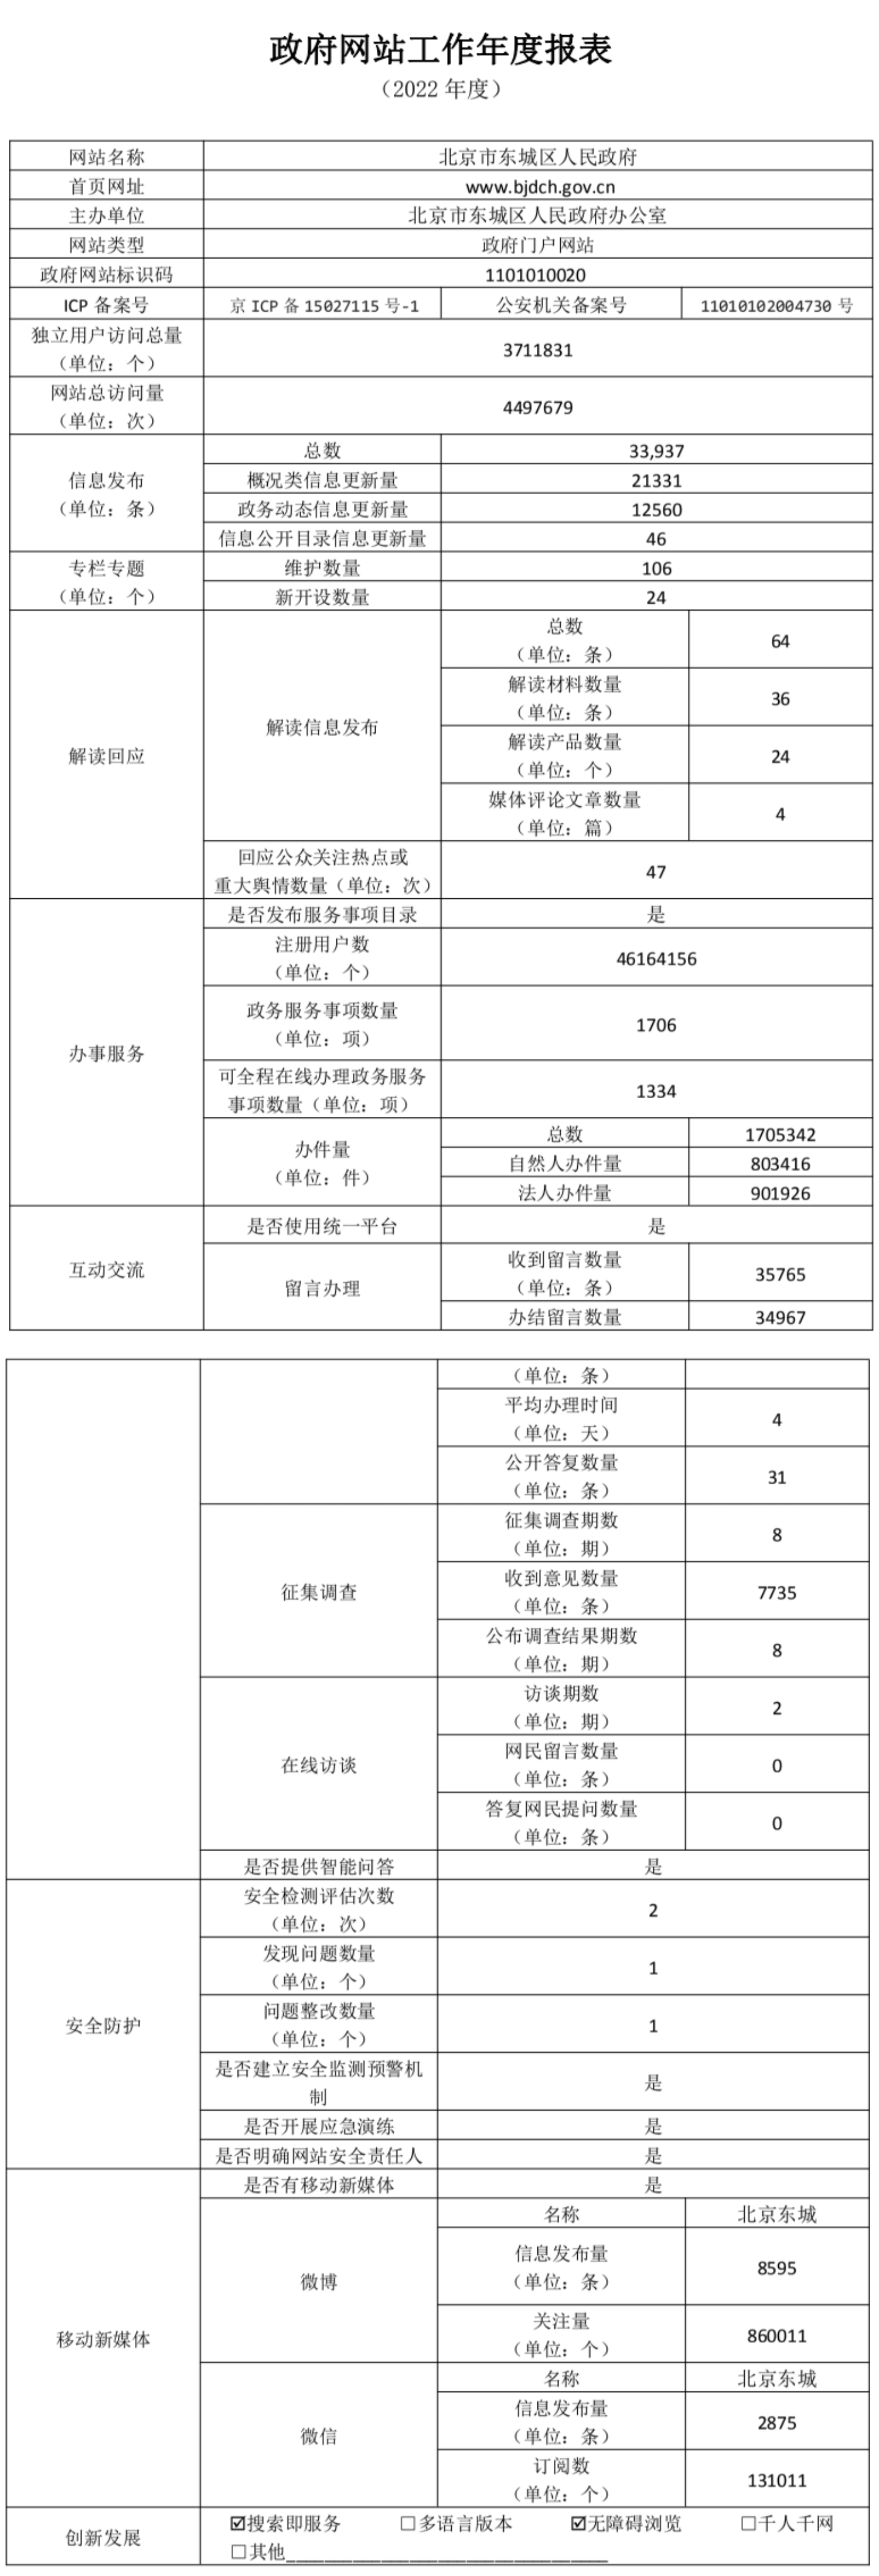 北京市東城區人民政府2022年政府網站年度工作報表